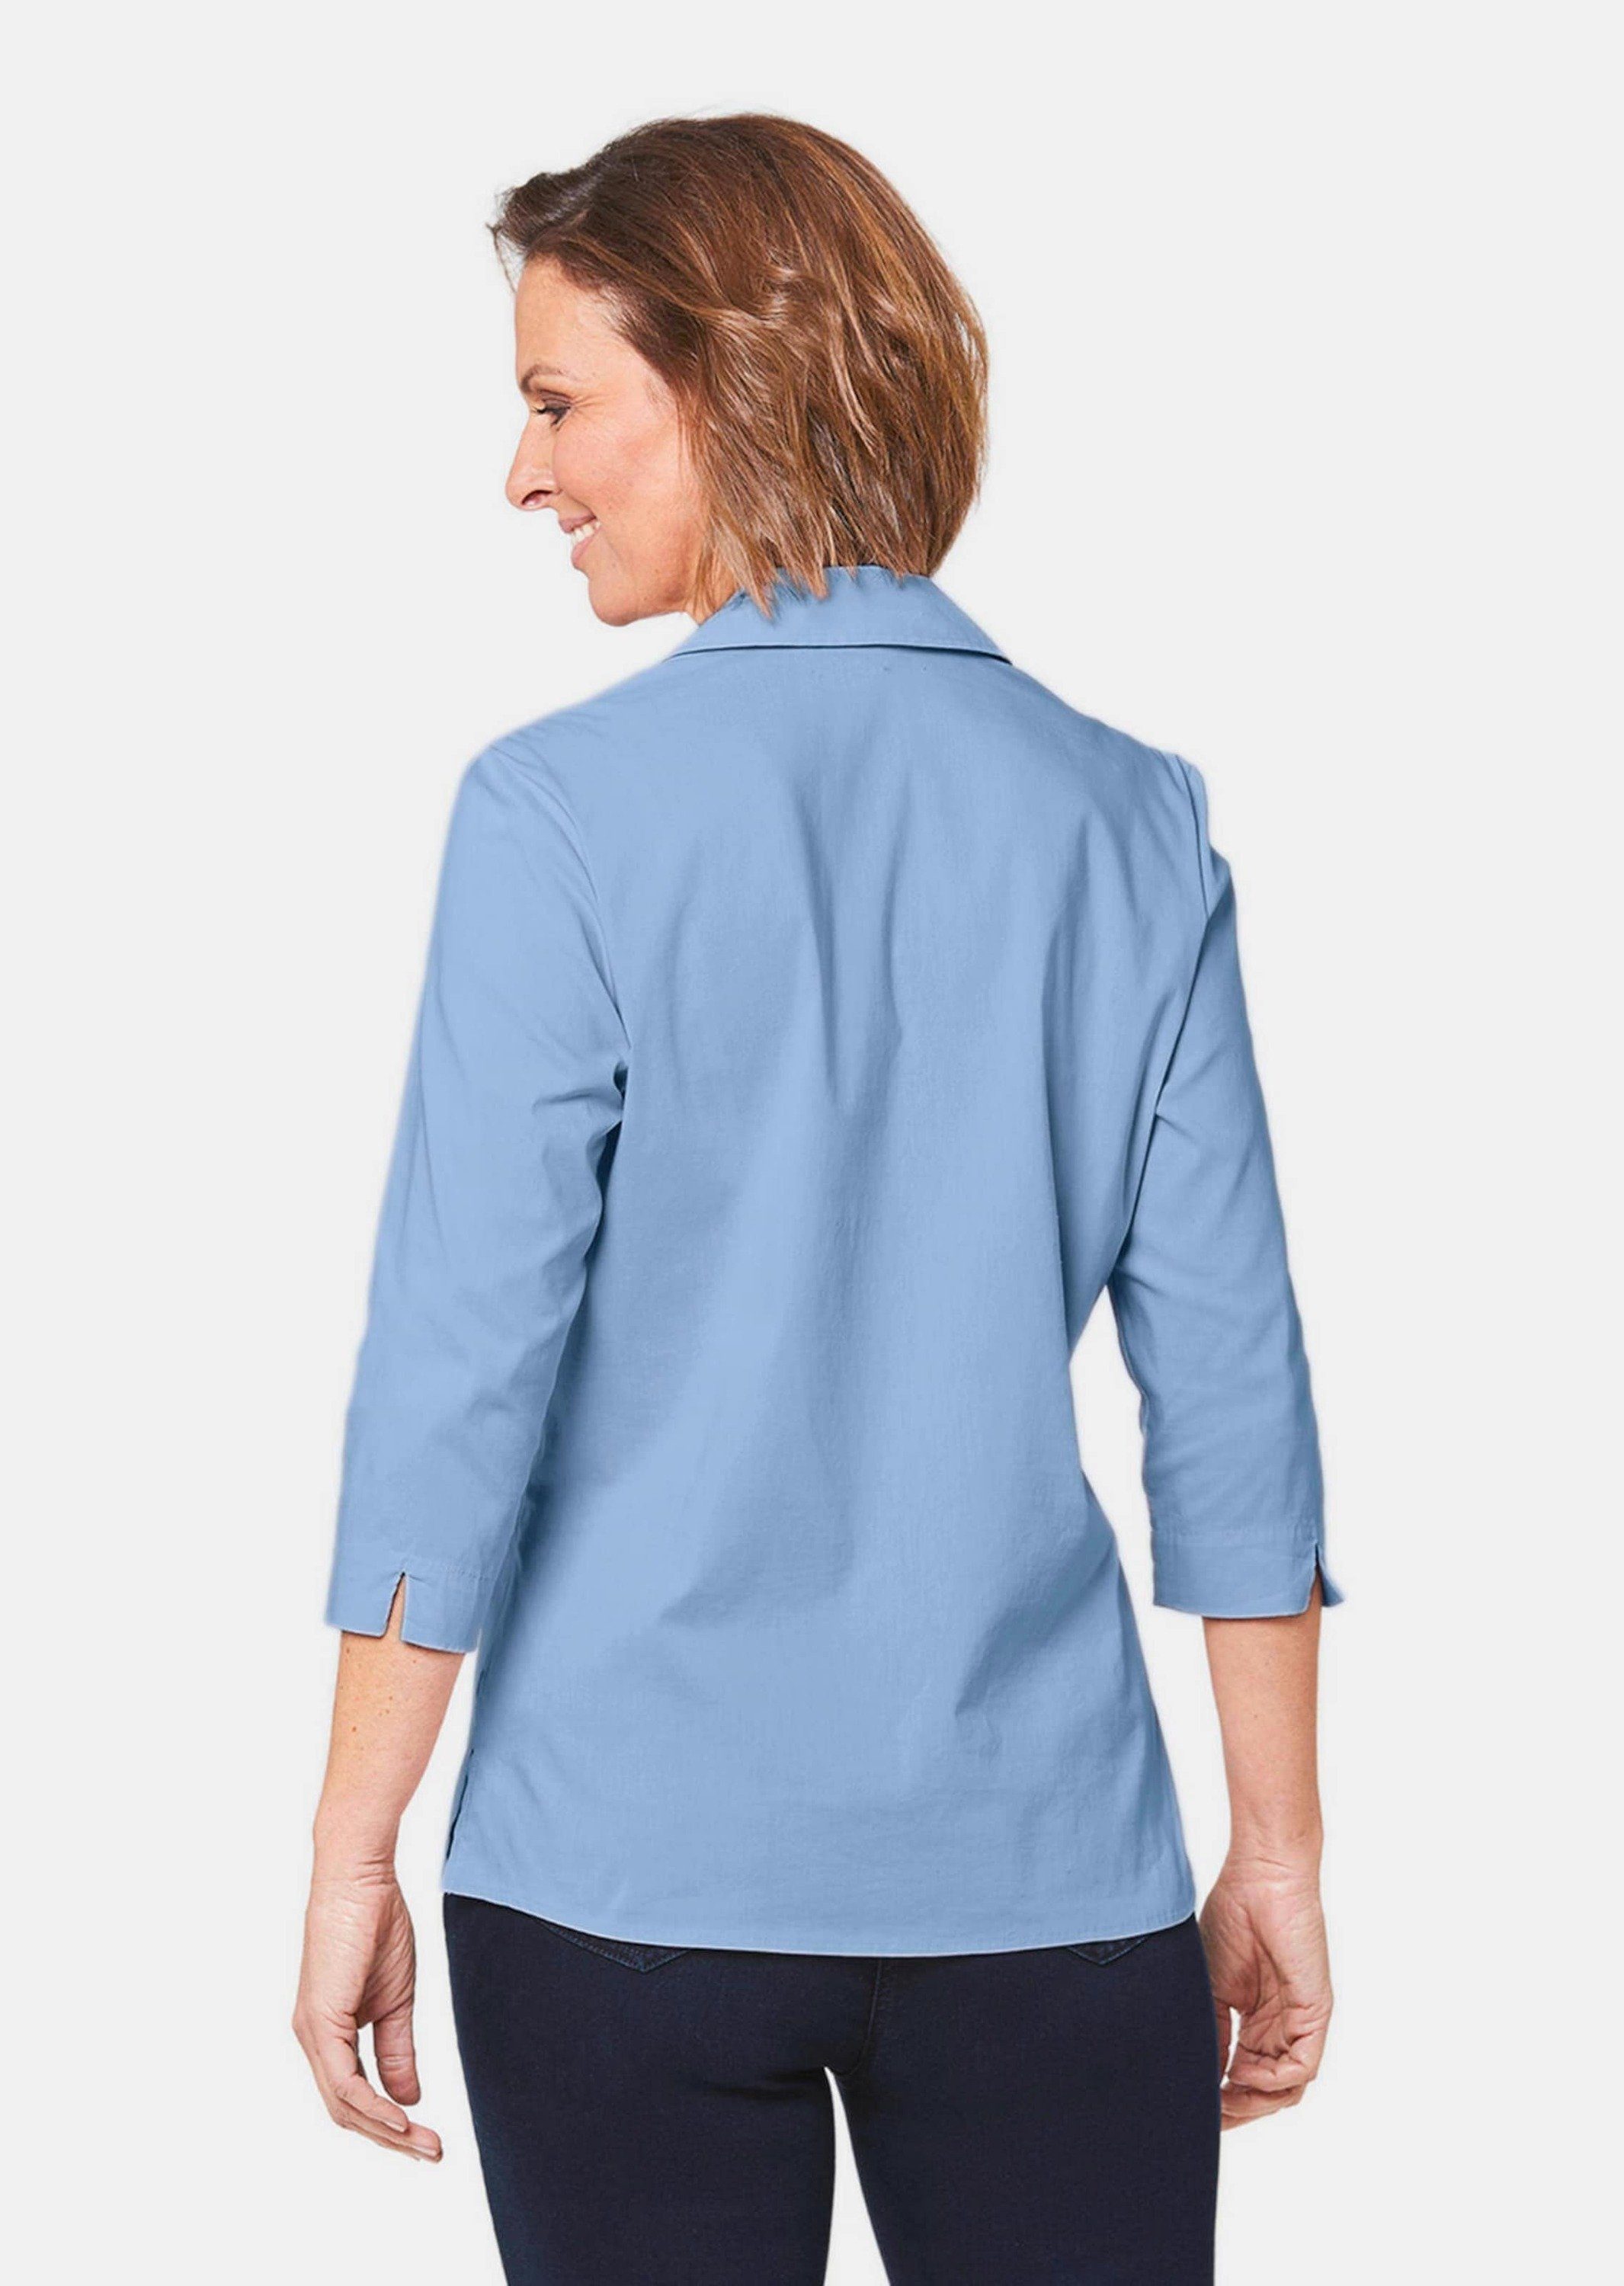 Bluse Hemdbluse GOLDNER Baumwolle mit Stretchbequeme Kurzgröße: bleu